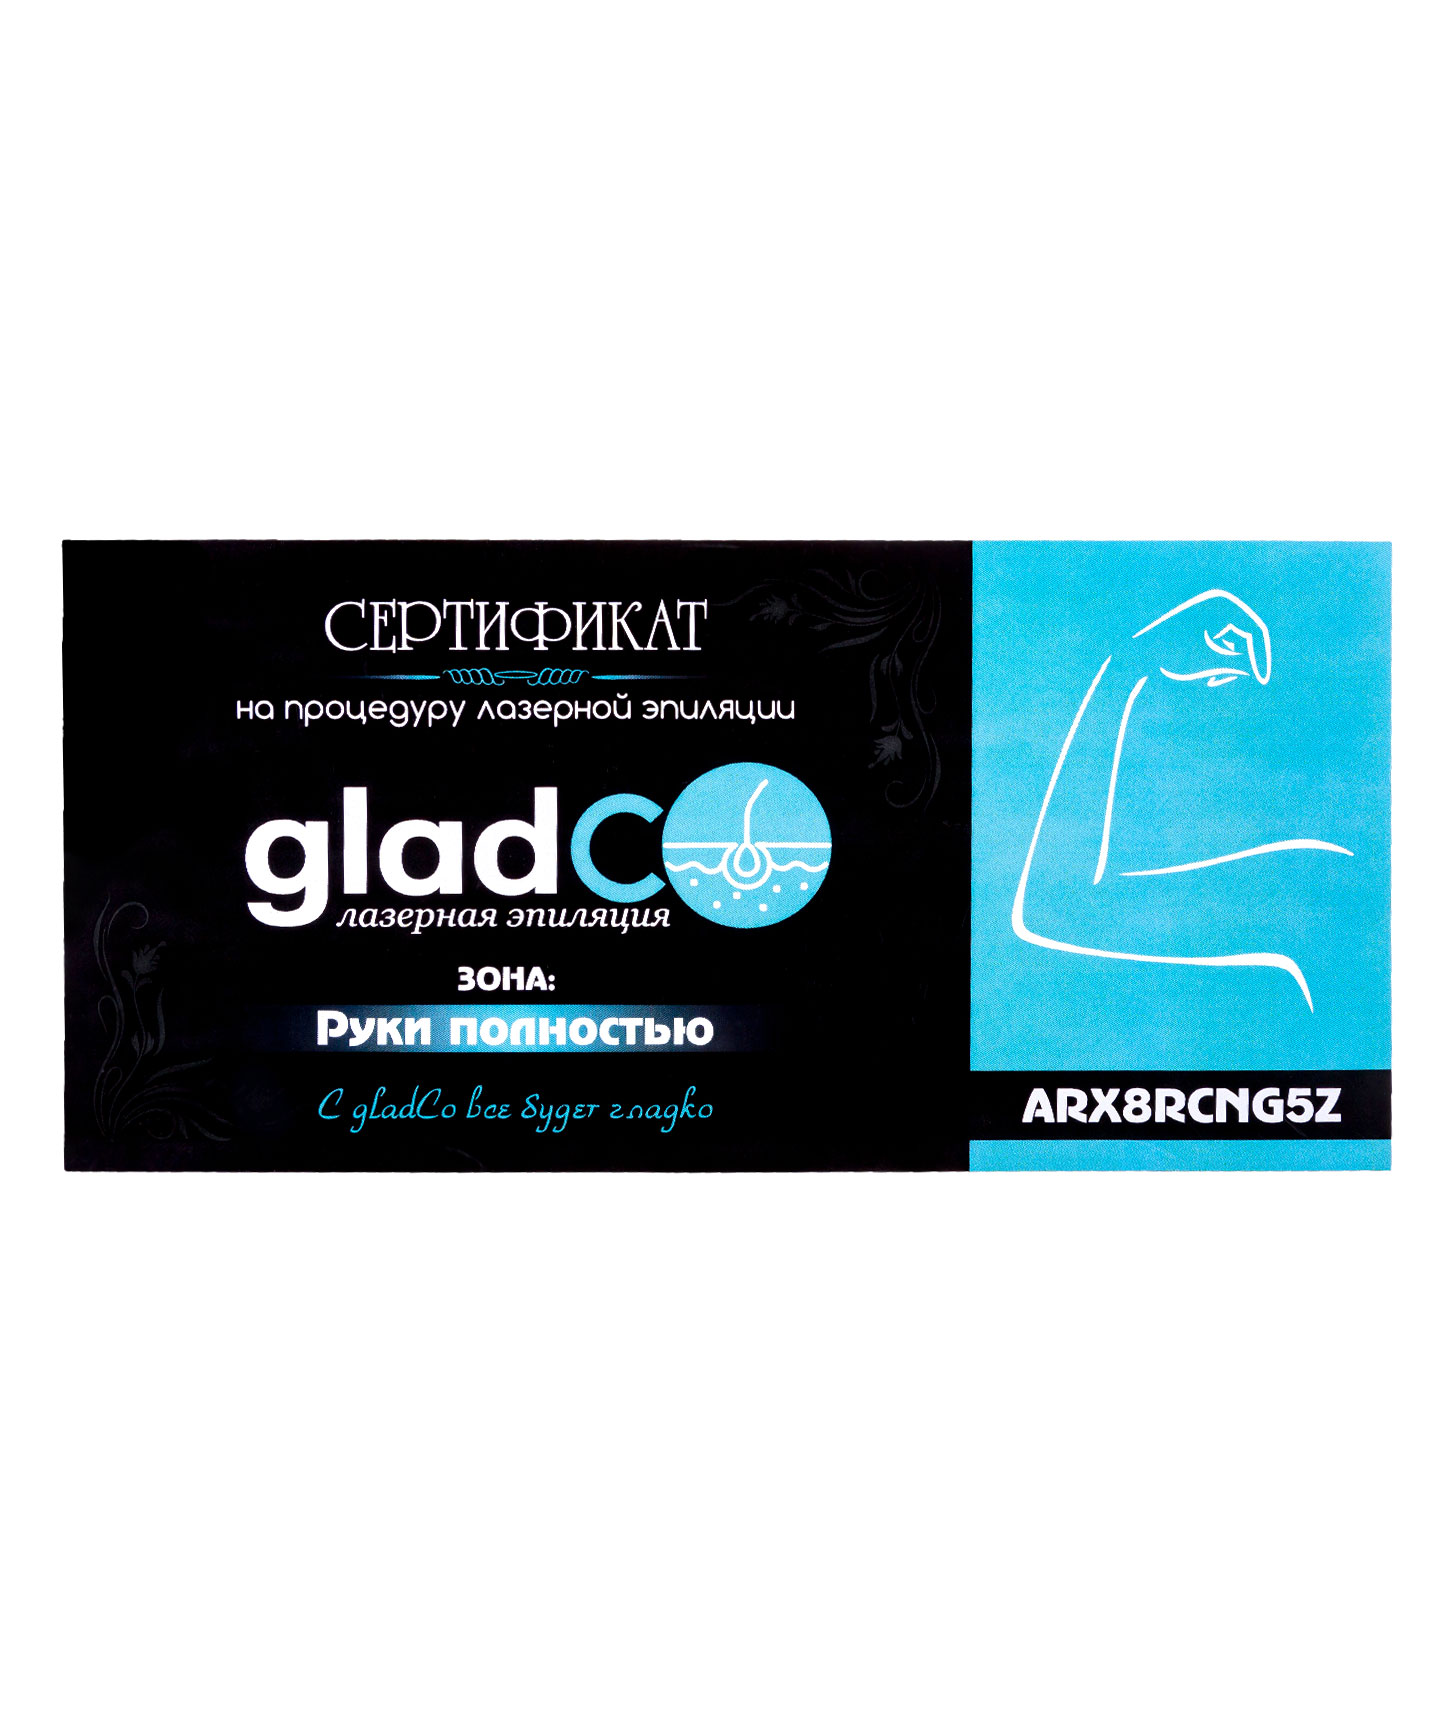 Сертификат на процедуру лазерной эпиляции рук (полностью) gladCo.uz